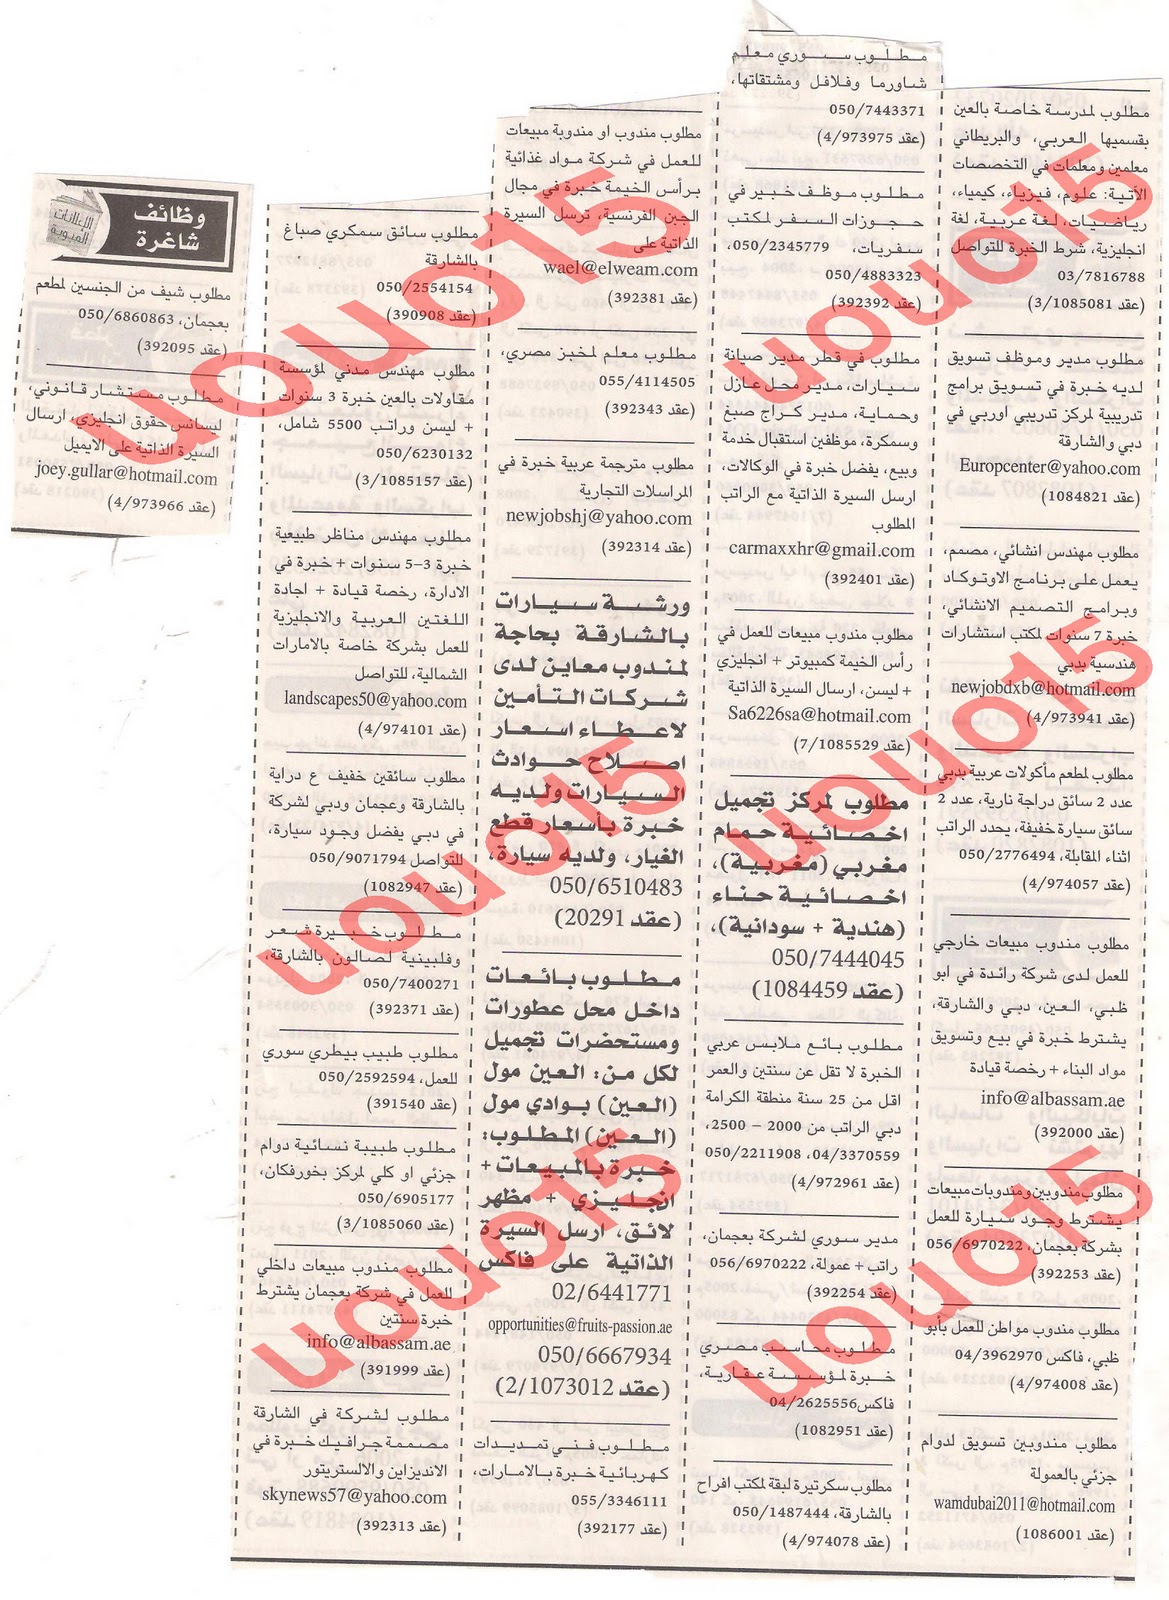  وظائف شاغرة من  جريدة الخليج الاربعاء 14\12\2011 , وظائف حكومية متميزة  Picture+001